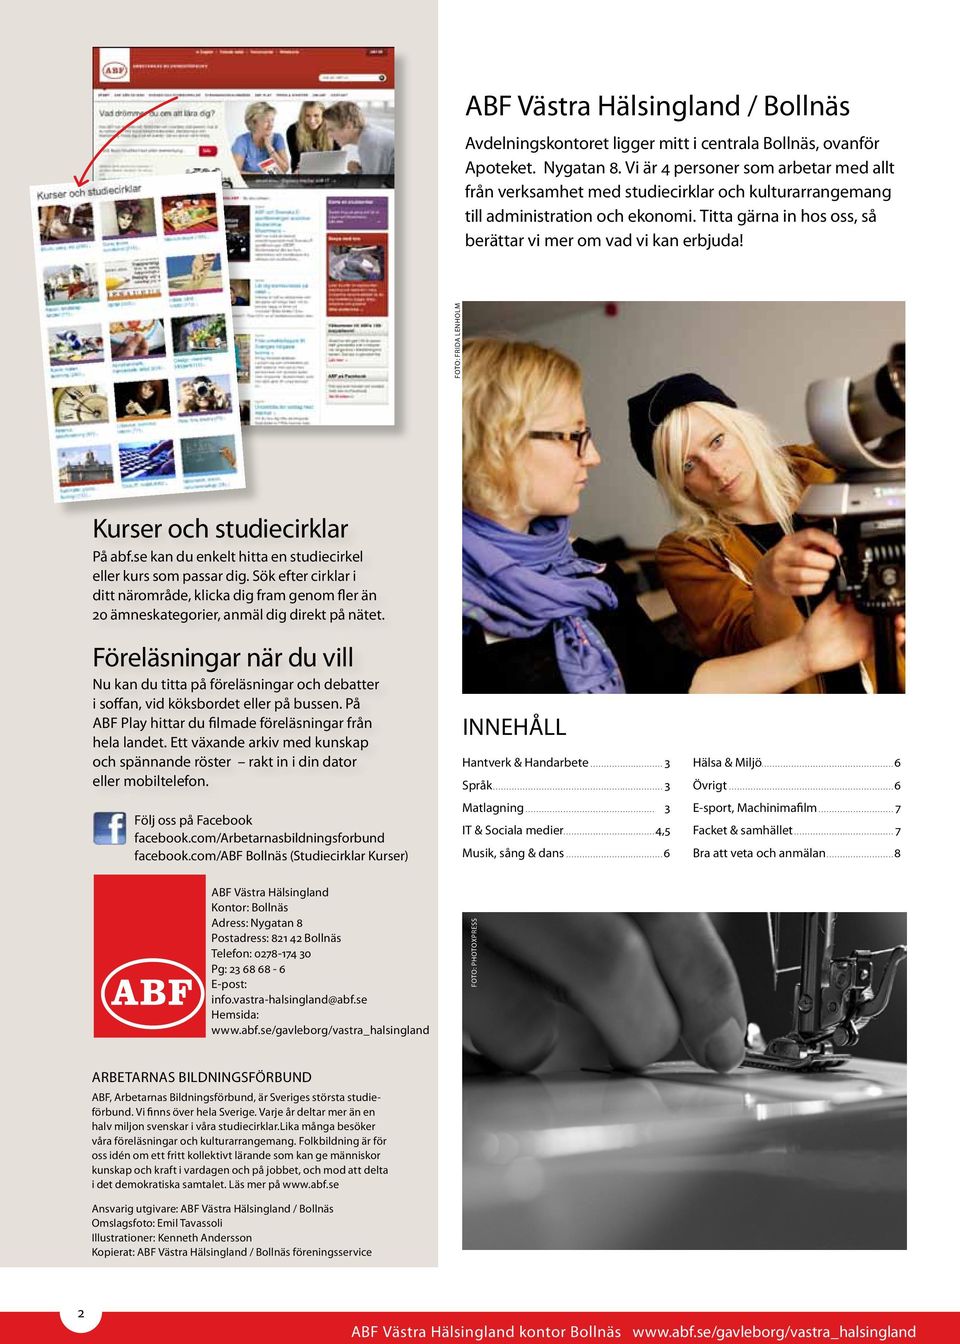 foto: frida lenholm Kurser och studiecirklar På abf.se kan du enkelt hitta en studiecirkel eller kurs som passar dig.